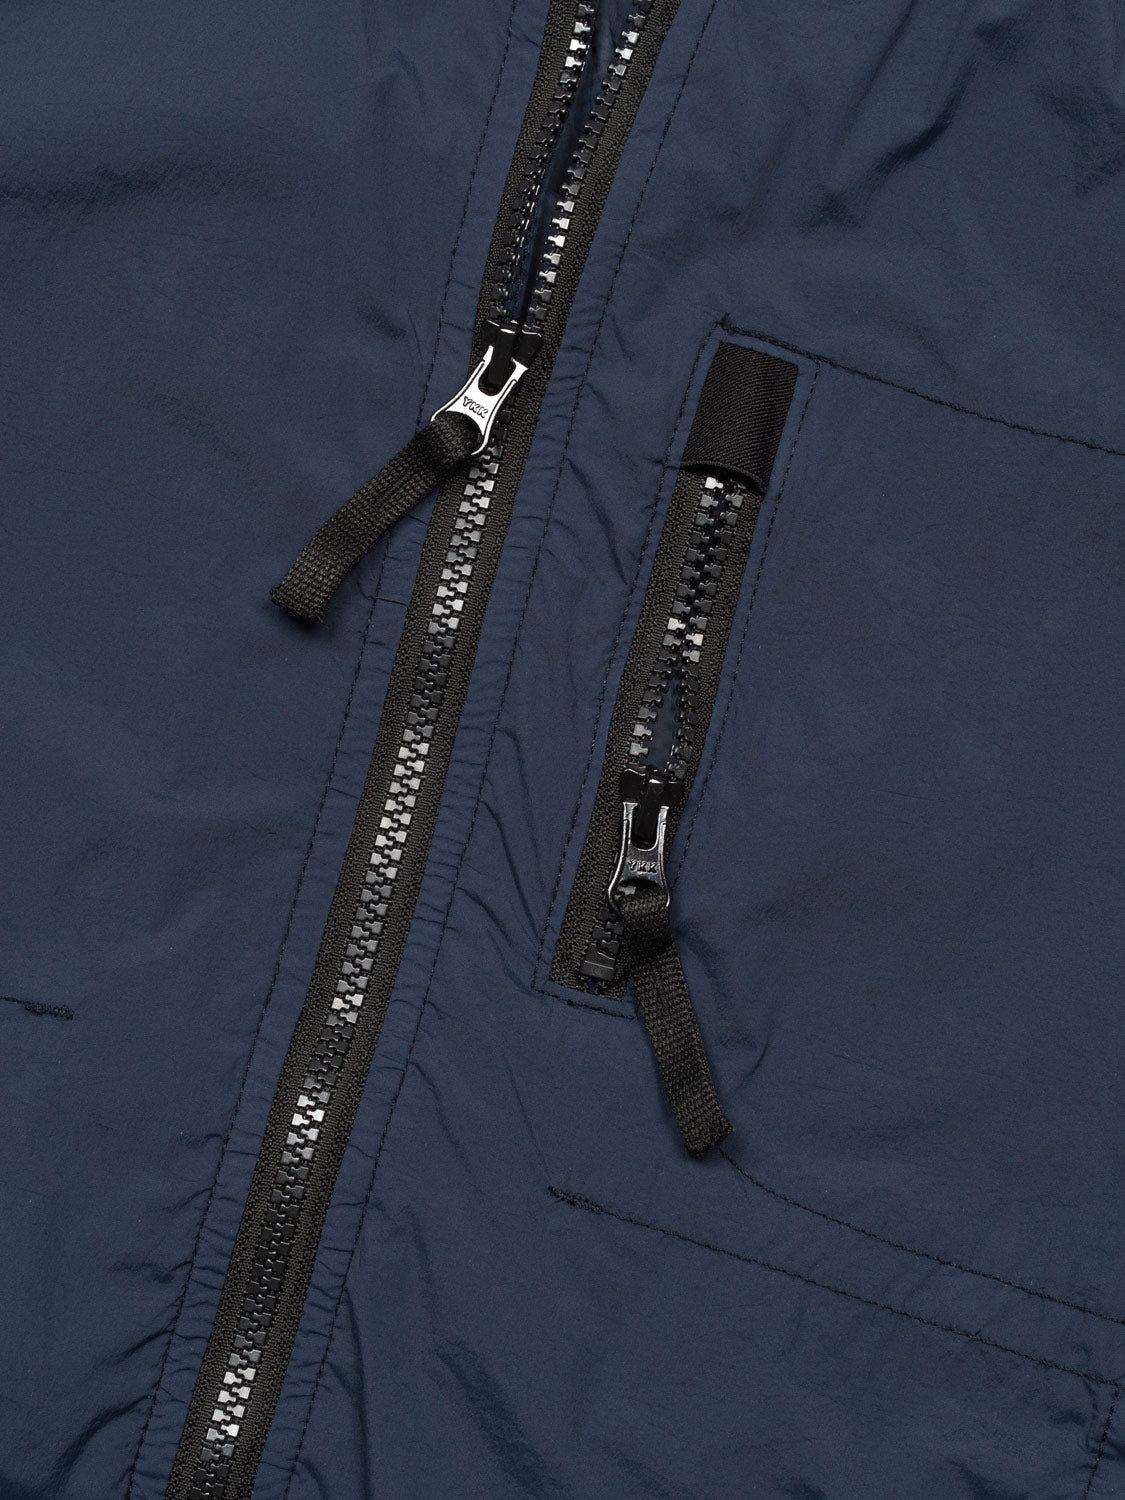 Jacke mit Reißverschluss-Details - Blau